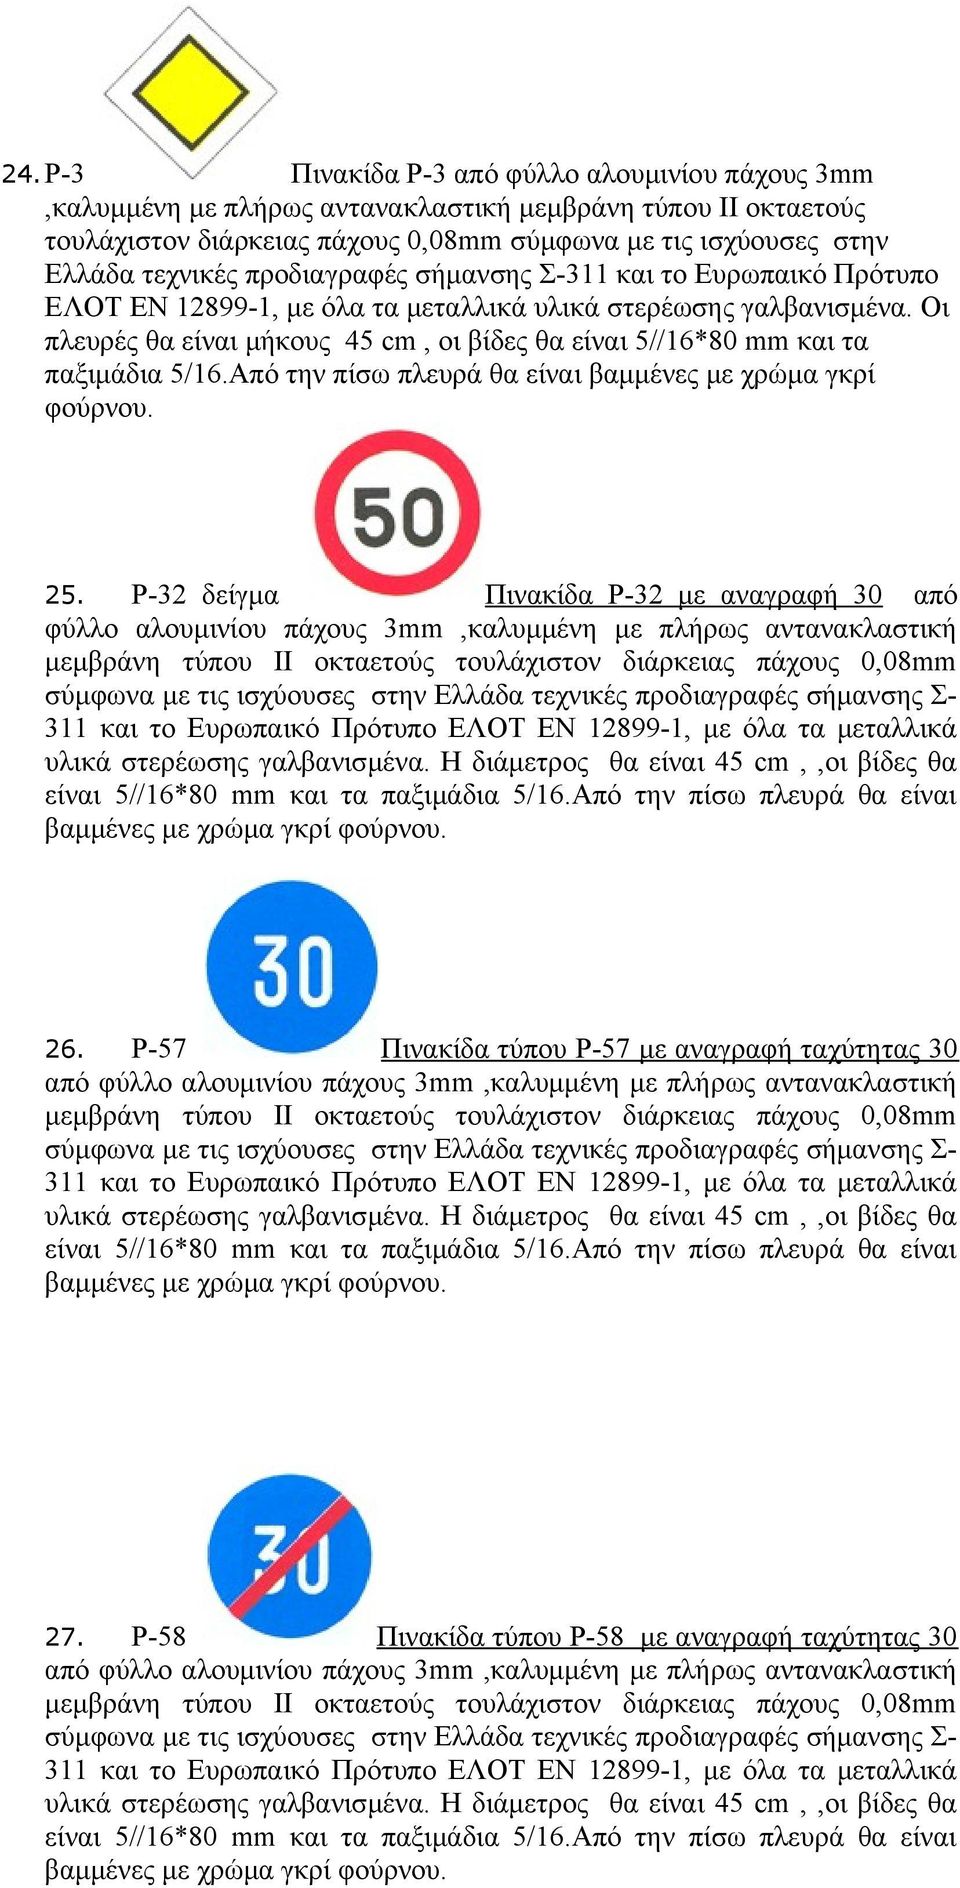 ισχύουσες στην Ελλάδα τεχνικές προδιαγραφές σήμανσης Σ- 311 και το Ευρωπαικό Πρότυπο ΕΛΟΤ ΕΝ 12899-1, με όλα τα μεταλλικά υλικά στερέωσης γαλβανισμένα.